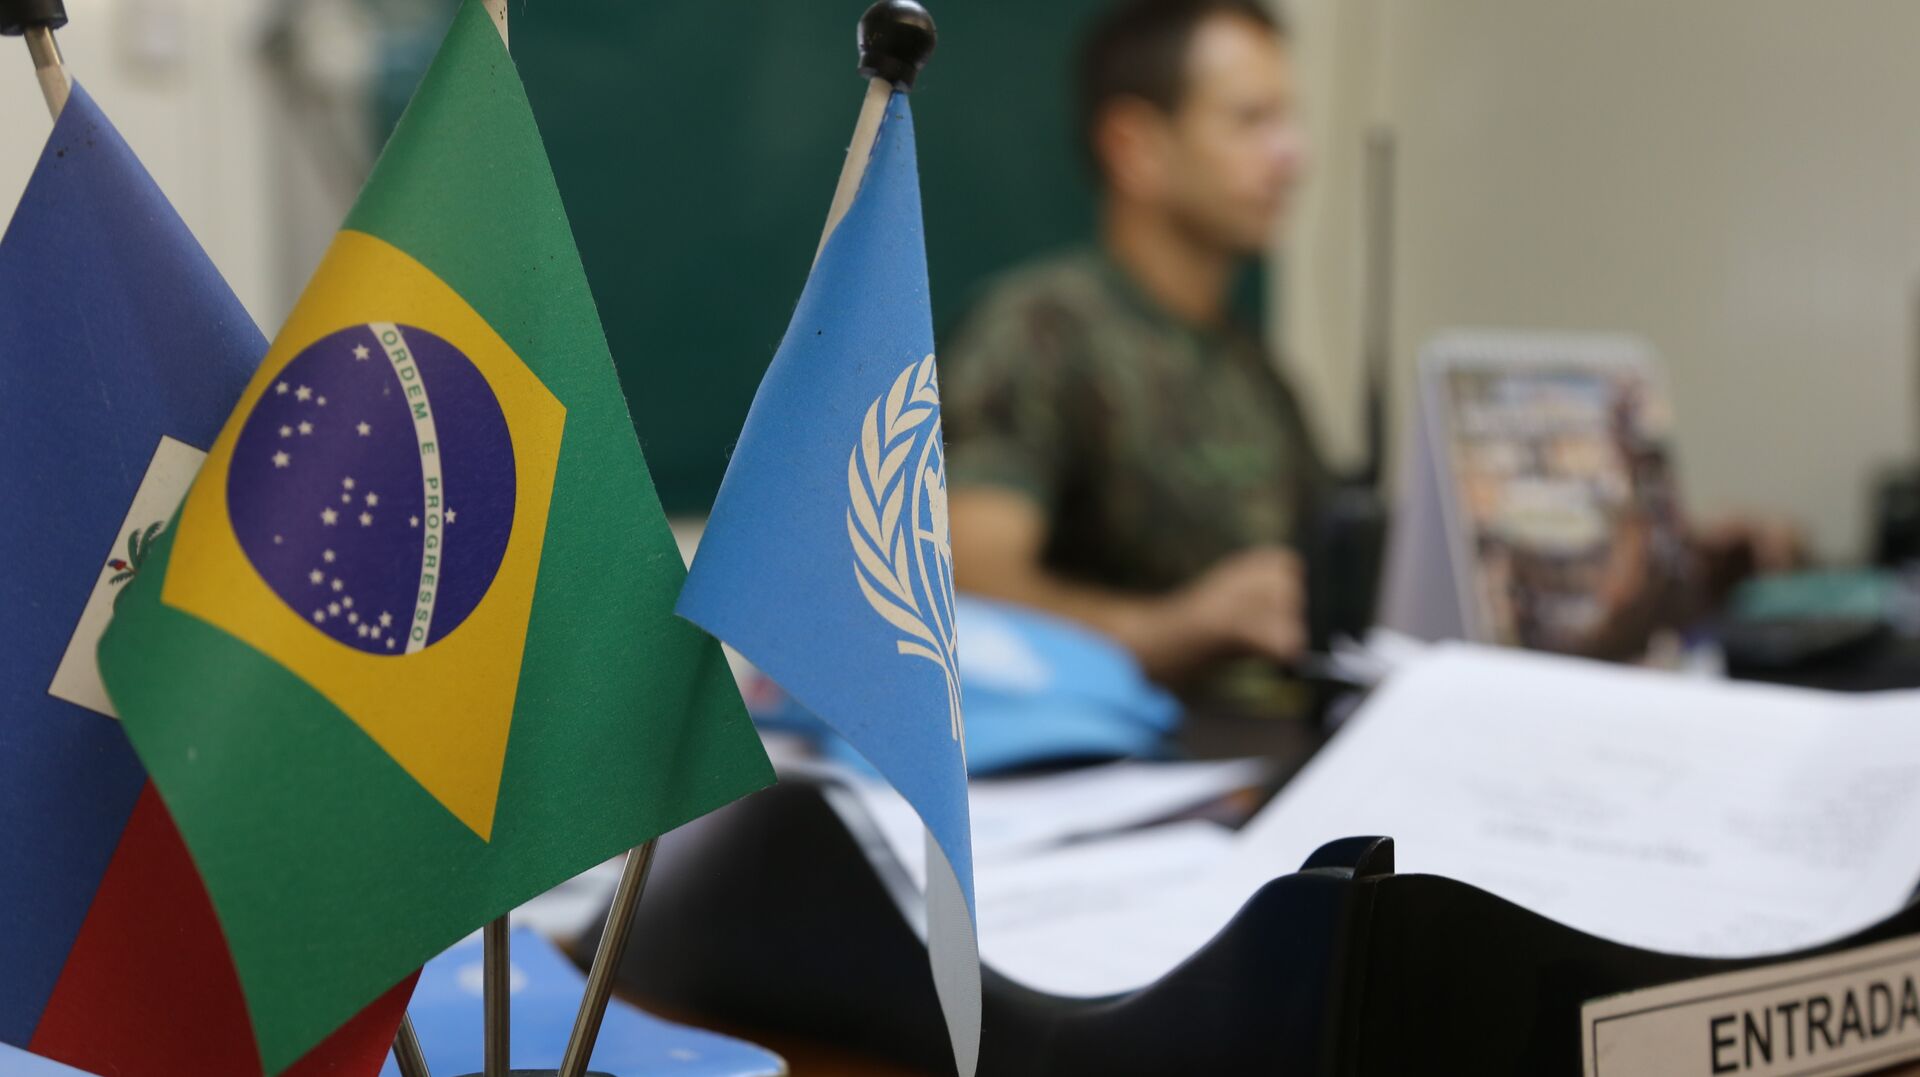 Assassinato do presidente do Haiti coloca em xeque as missões de paz da ONU envolvendo Brasil? - Sputnik Brasil, 1920, 08.07.2021